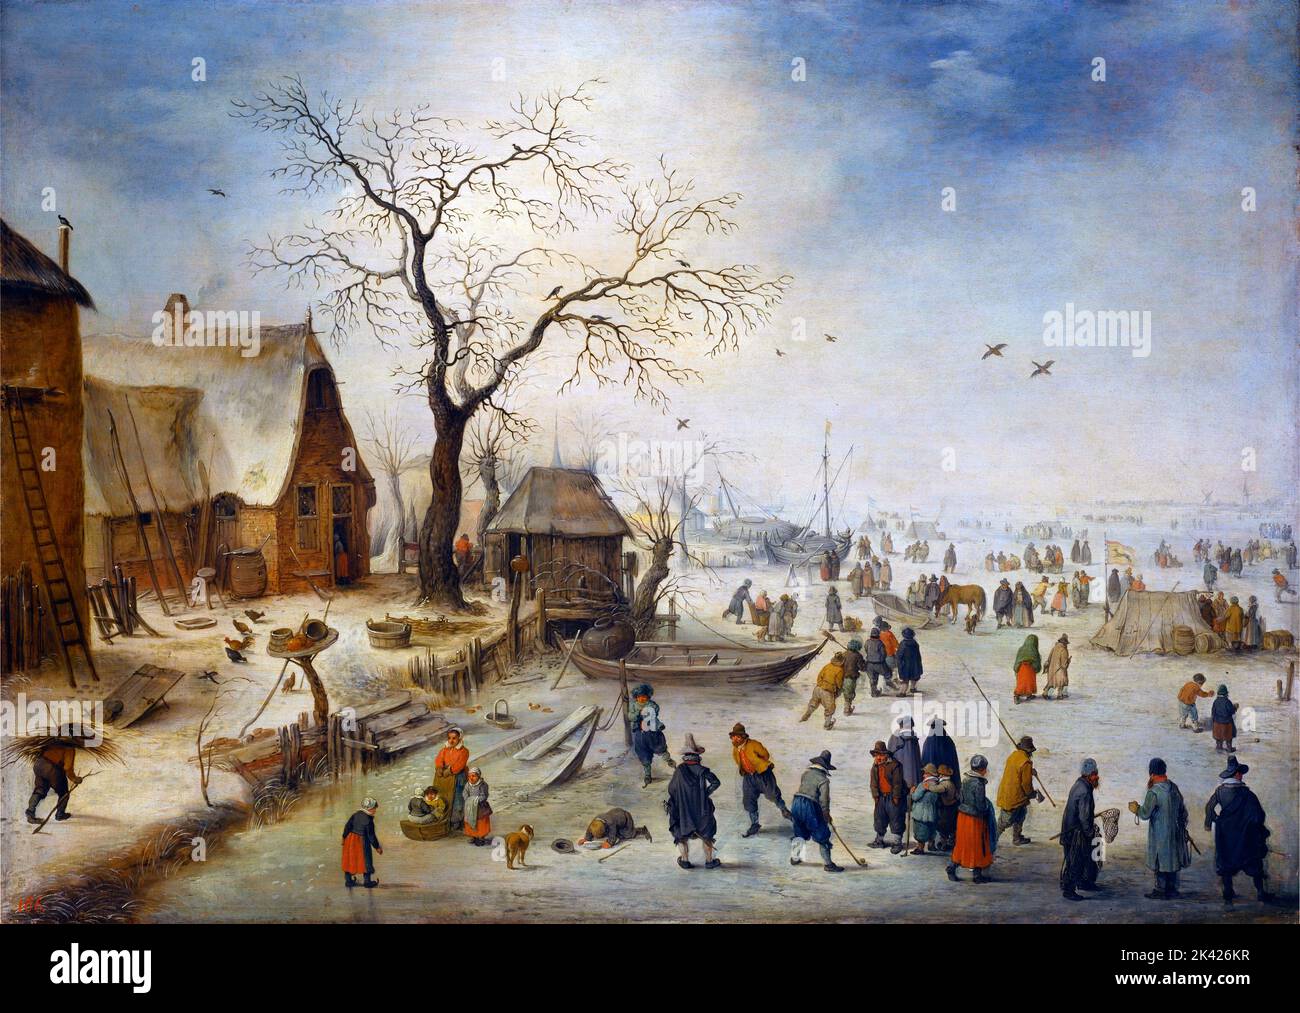 Das Dorf im Winter mit den Bauern auf dem Eis von Jan Brueghel dem Jüngeren (1601-1678), Öl auf Eichenplatte, c. 1630-40 Stockfoto